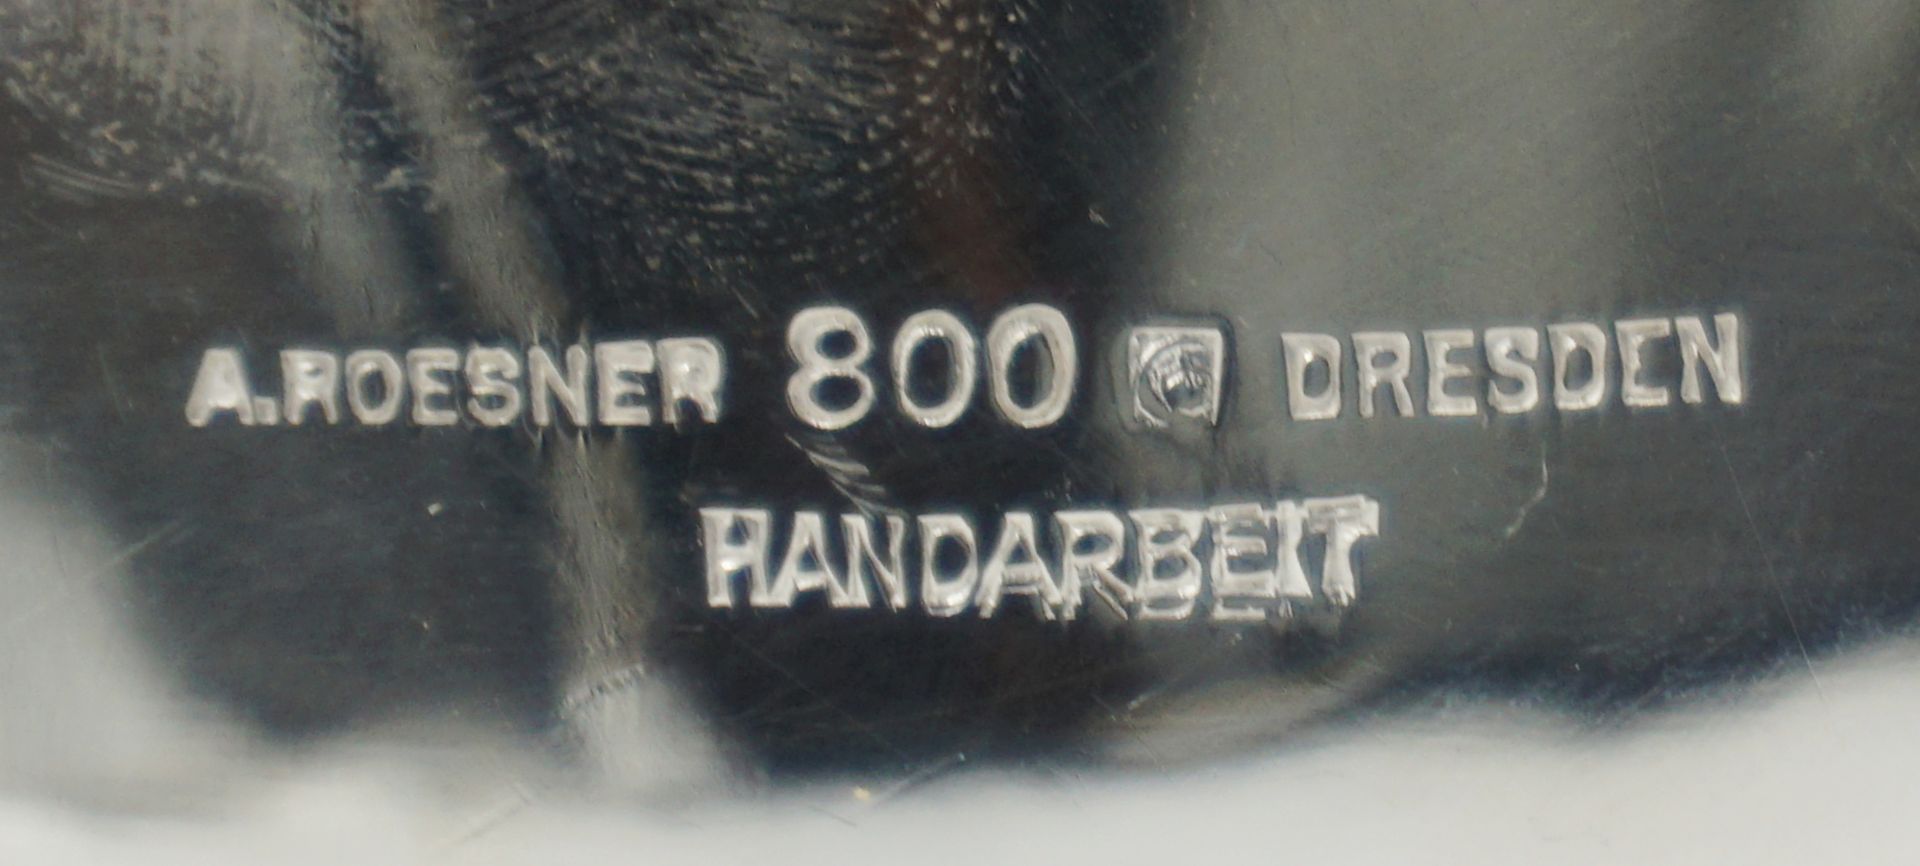 1 Teekanne Silber 800 gemarkt A. ROESNER, Dresden im Stile des Historismus - Bild 5 aus 5